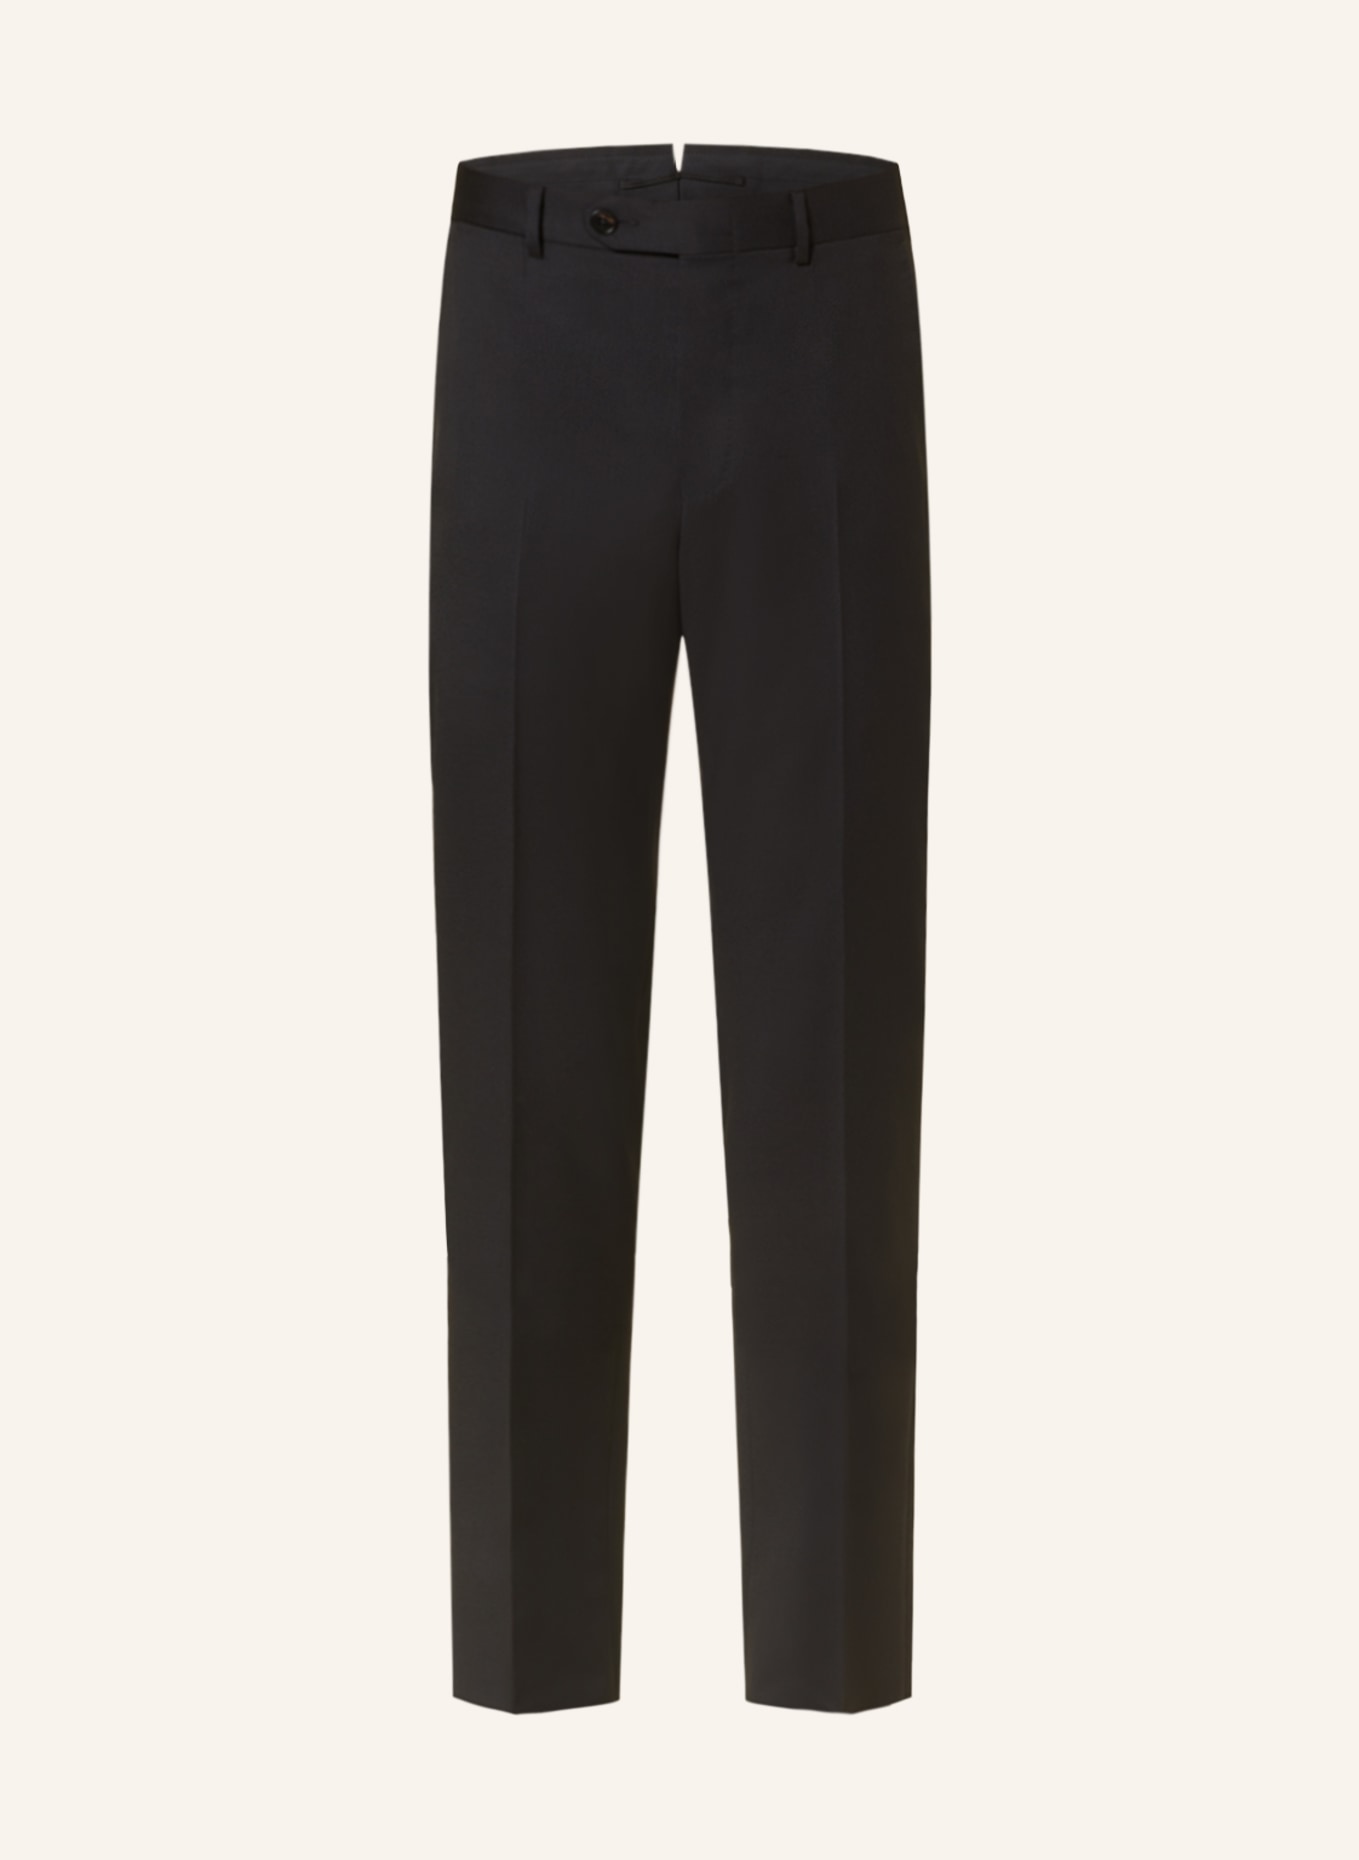 ZEGNA Anzughose MILANO Slim Fit, Farbe: 525 BLACK (Bild 1)